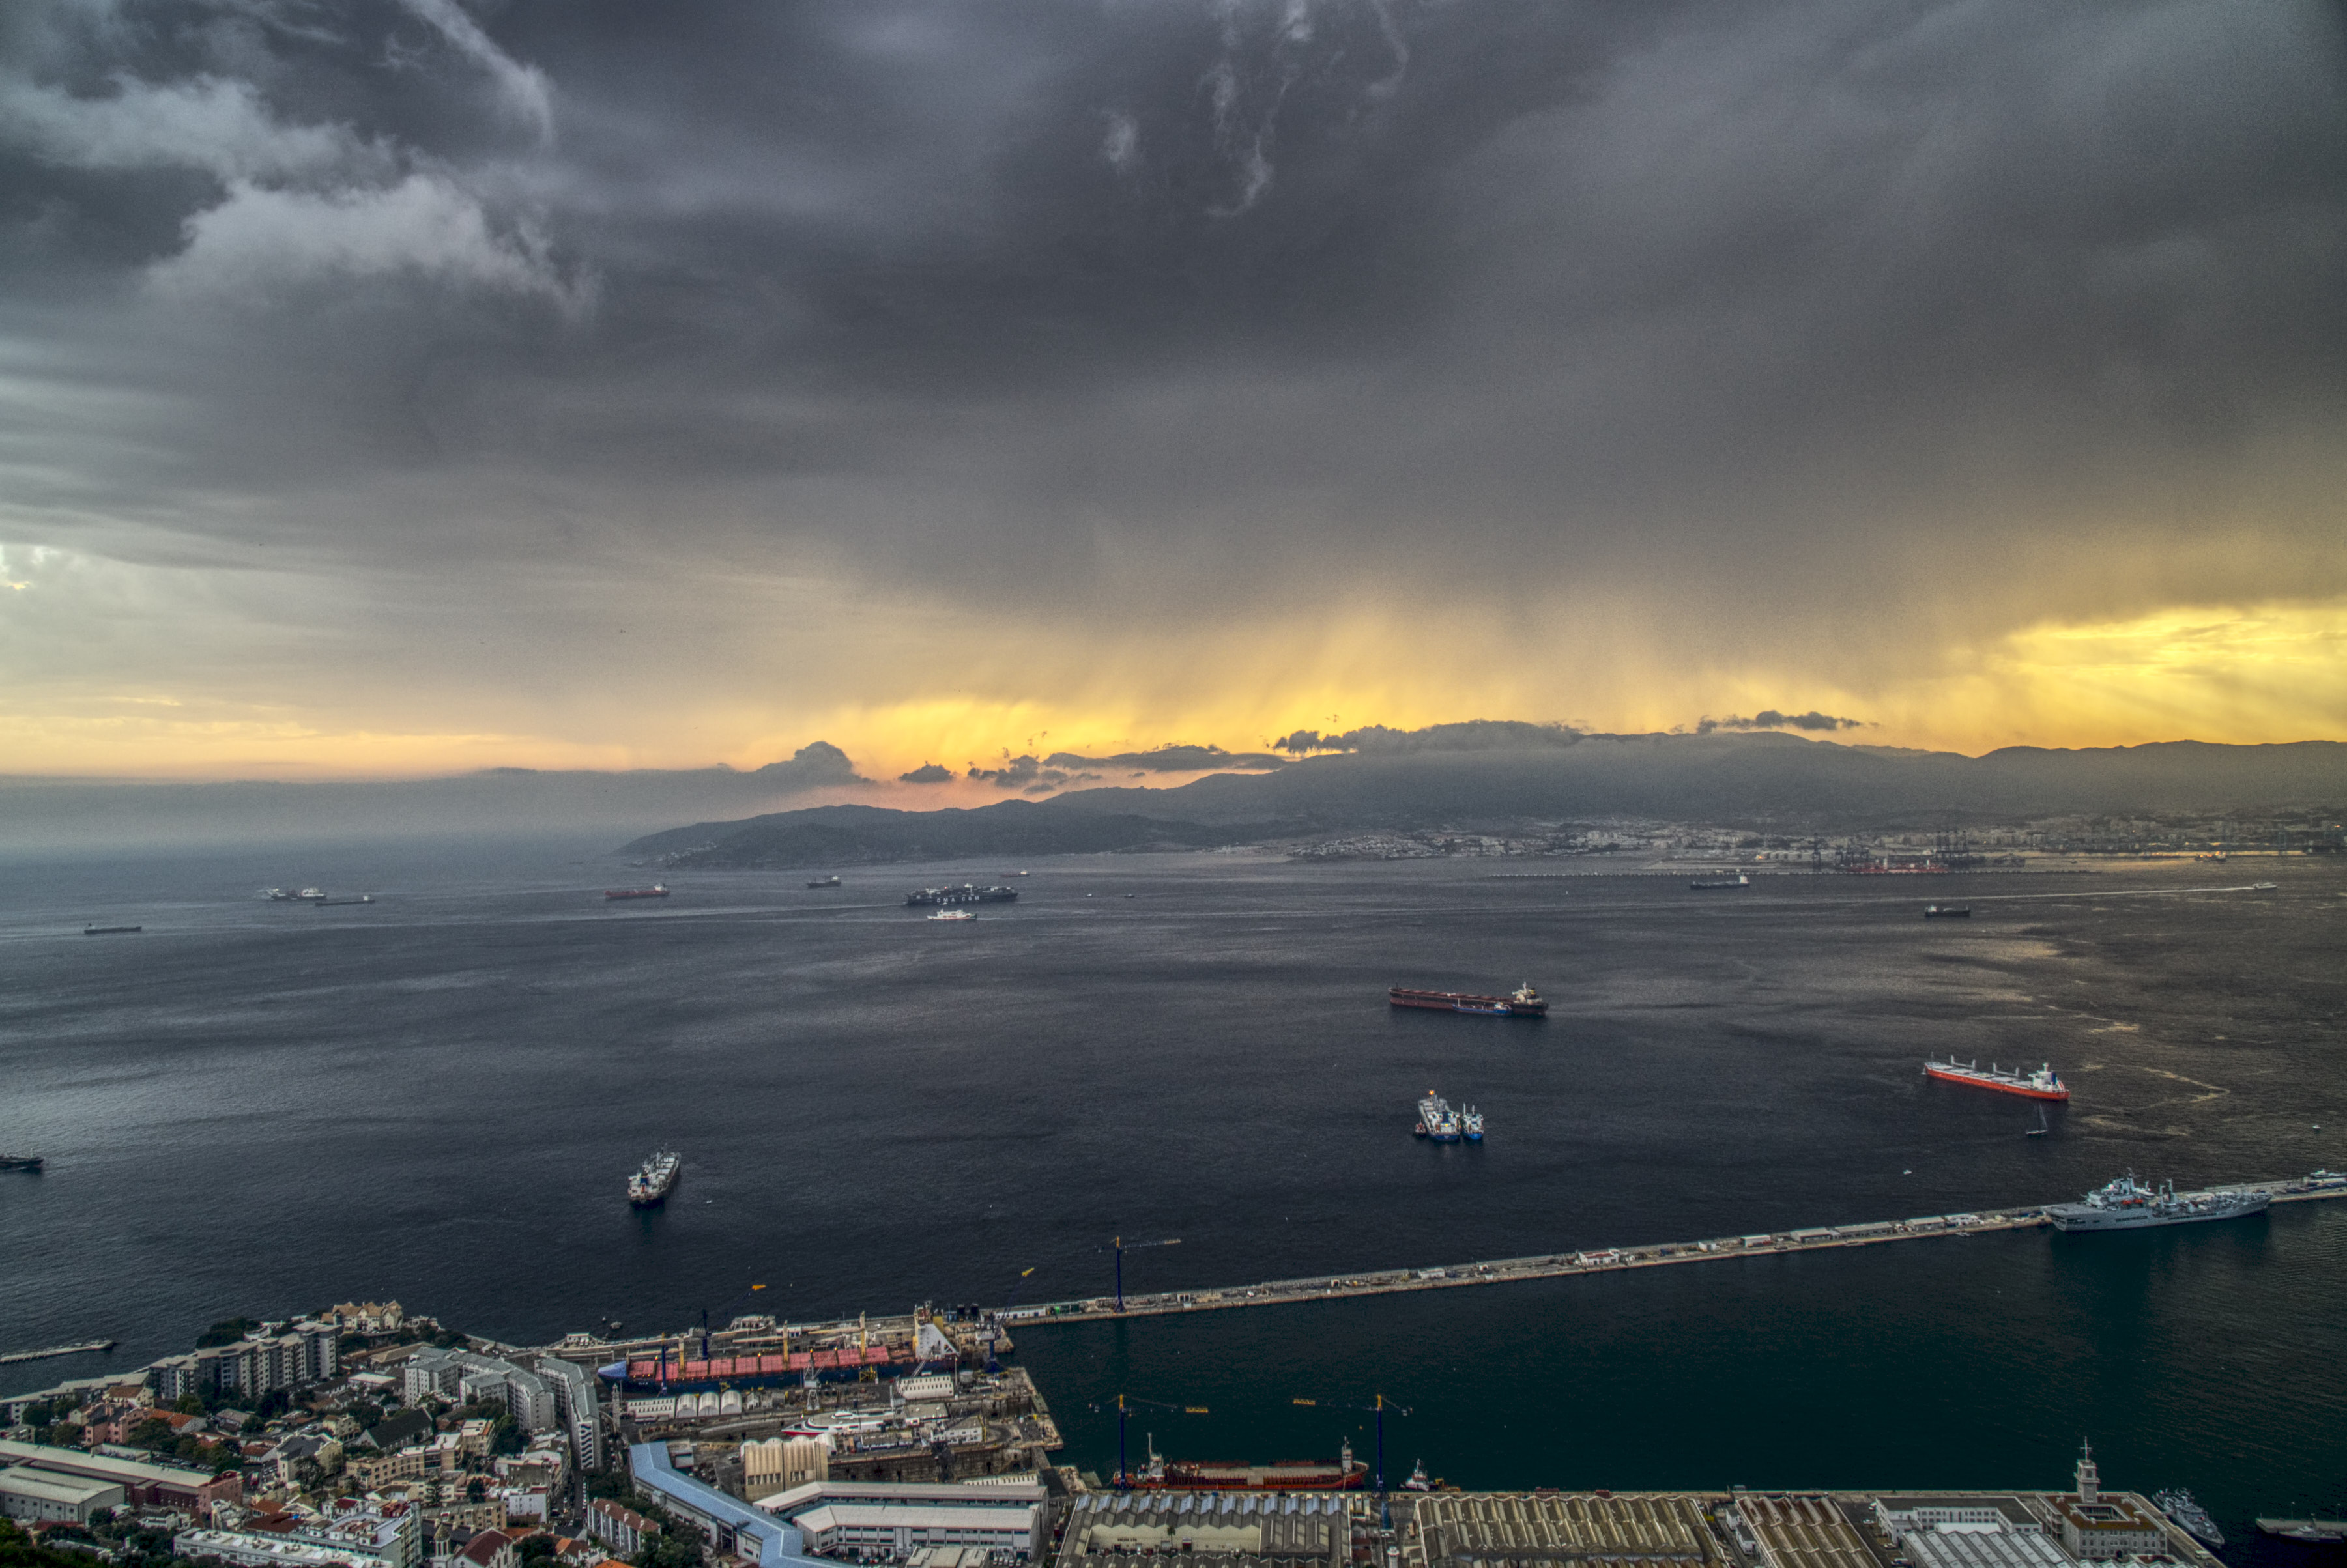 The sunset over Gibraltar